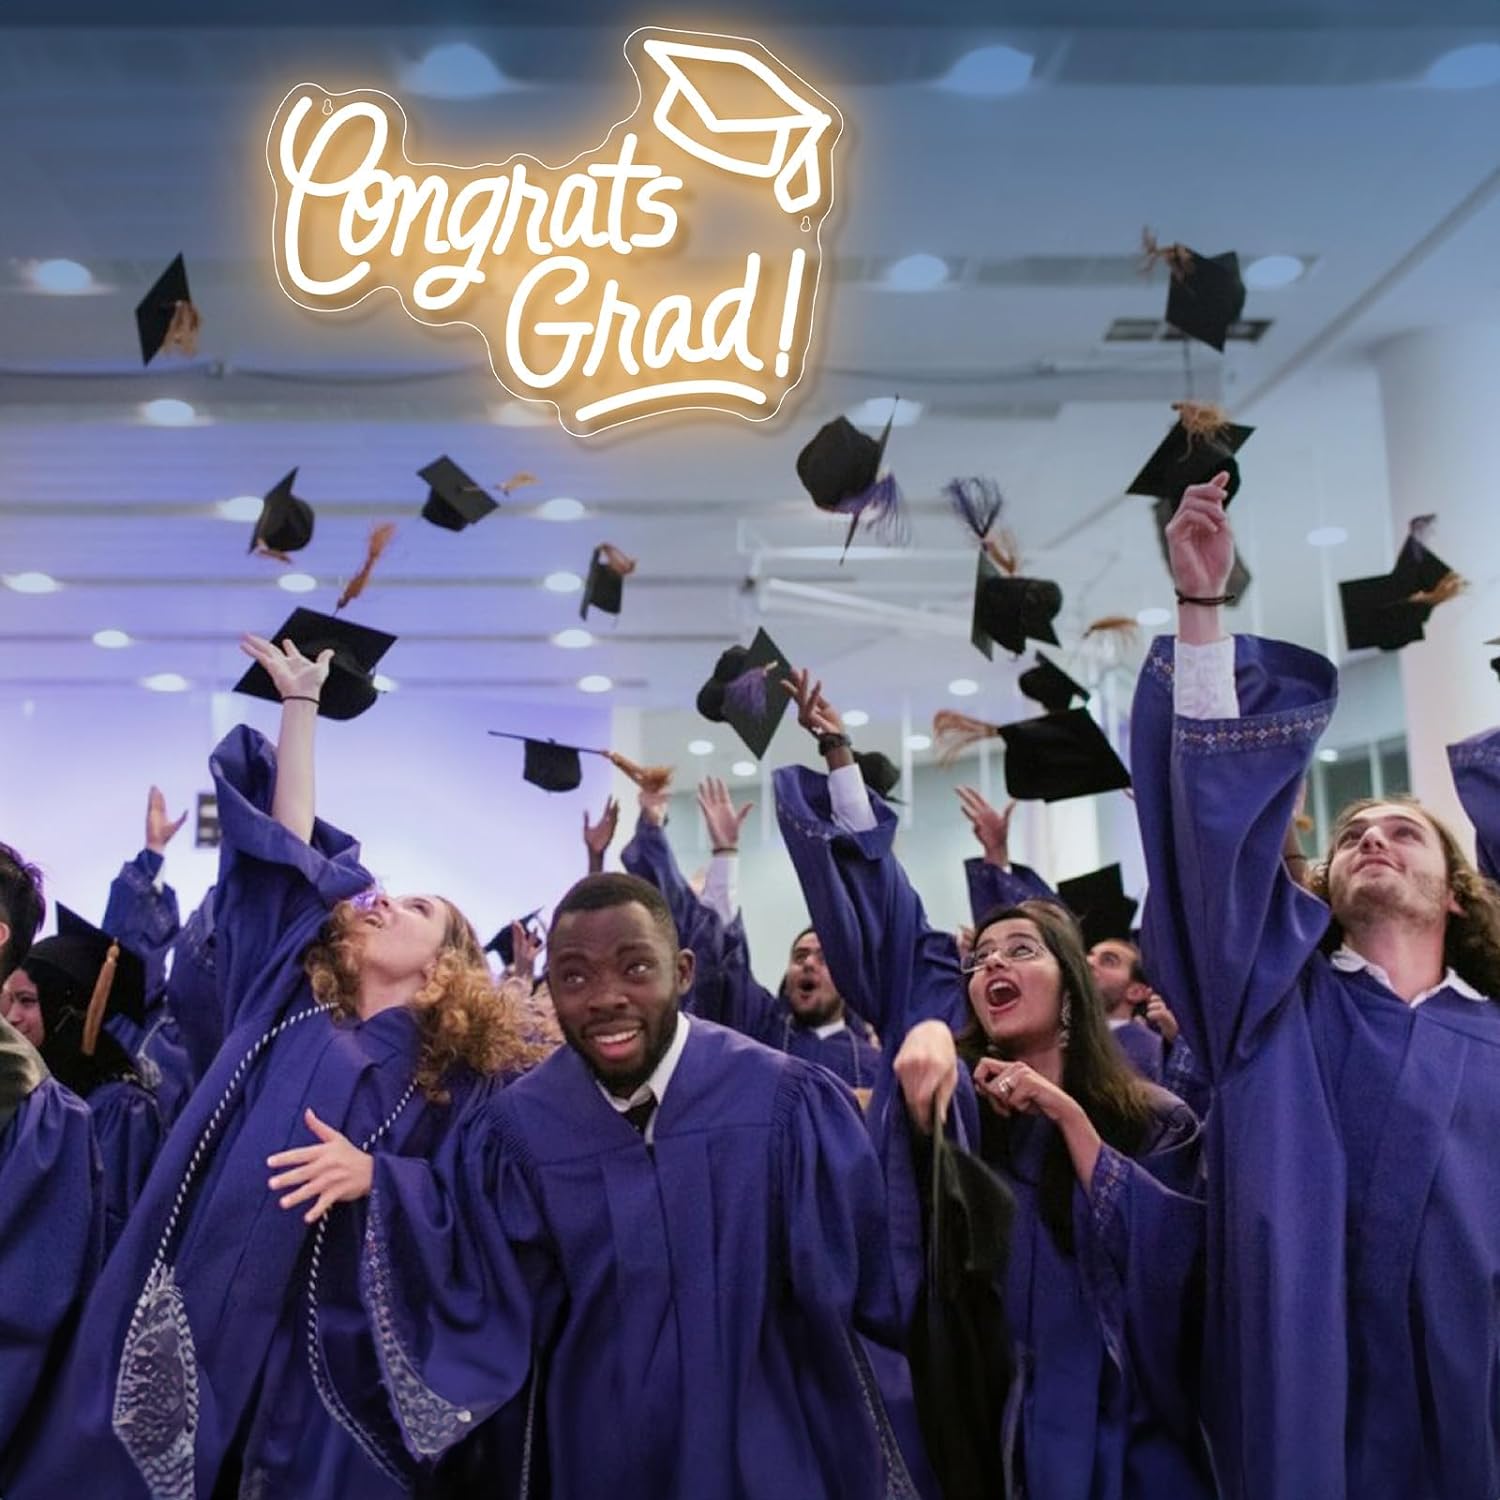 Congrats Grad Neon Sign with Graduation Cap Congrats Grad Light Up Sign for Wall Decor